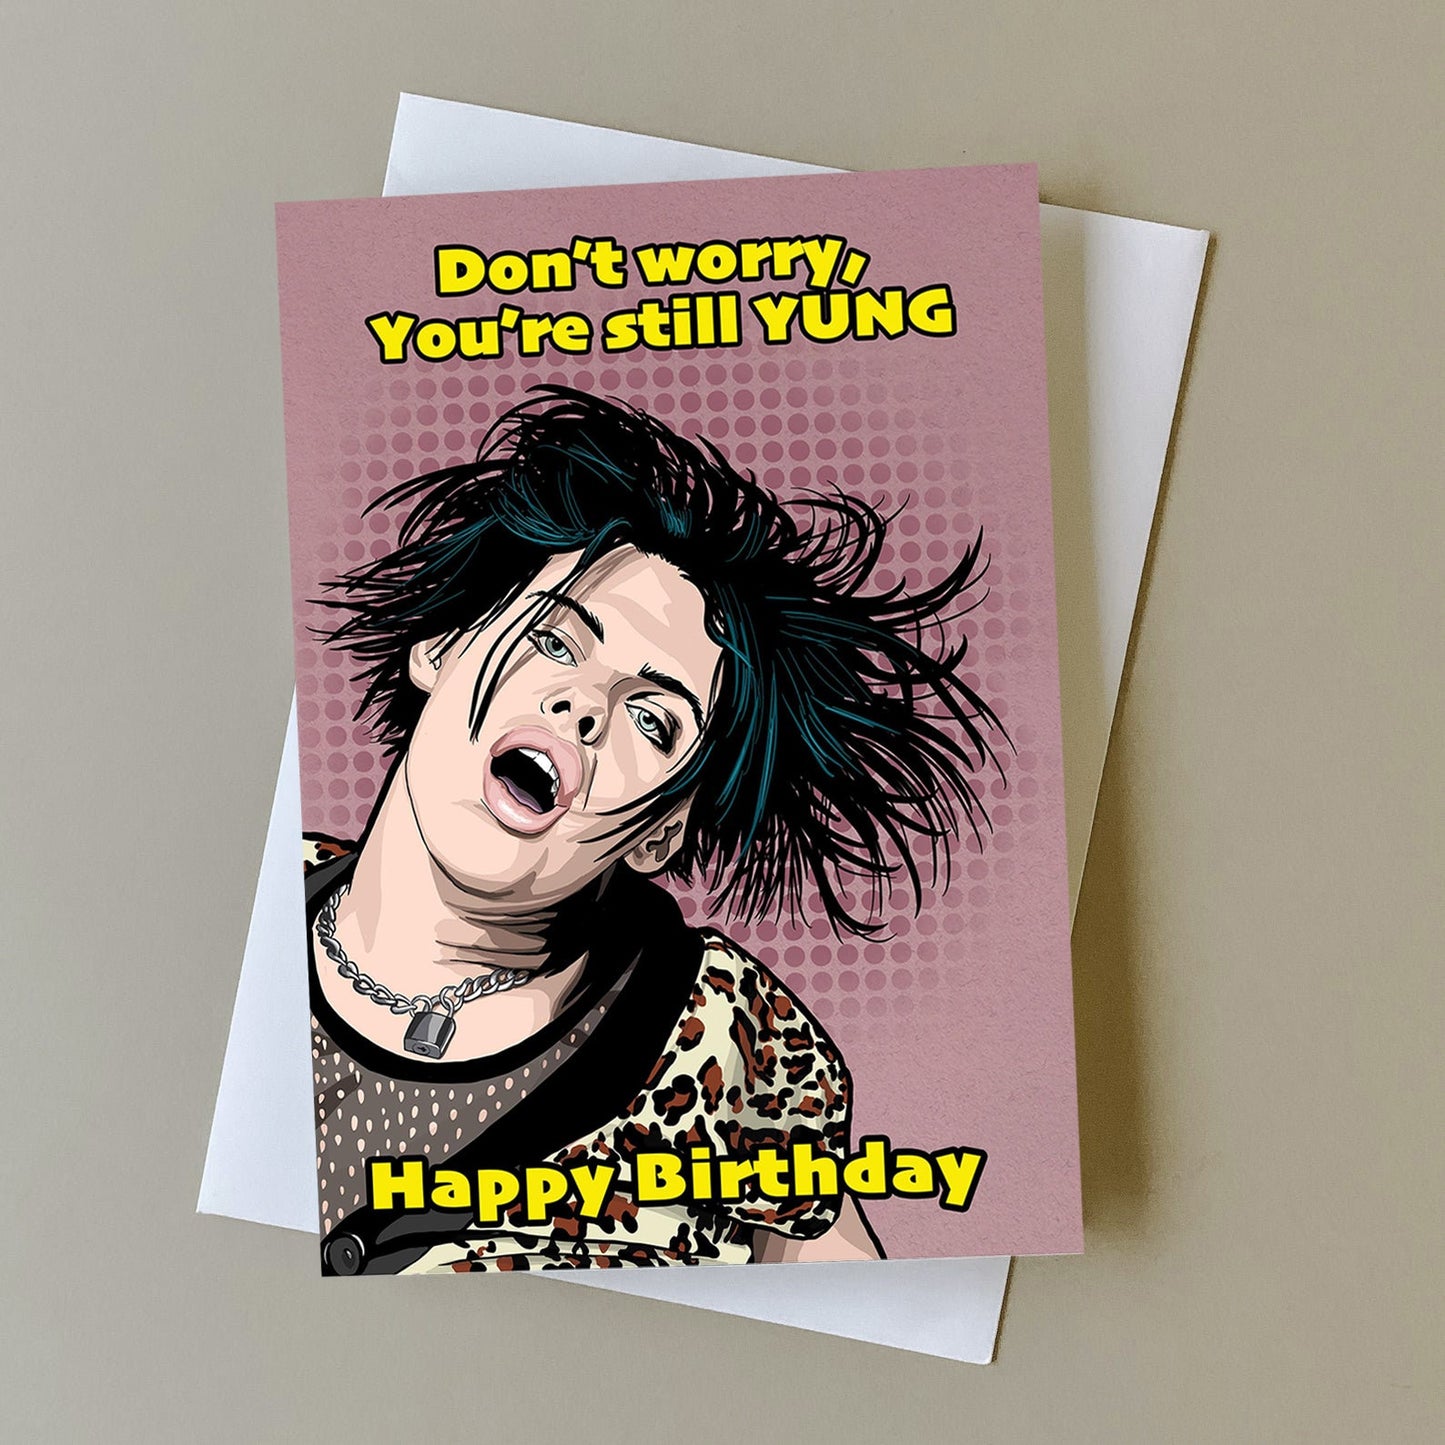 Yungblud birthday card, gift for Yungblud fan, greeting card for music fans, music birthday gift, personalised card, Yungblud birthday gift